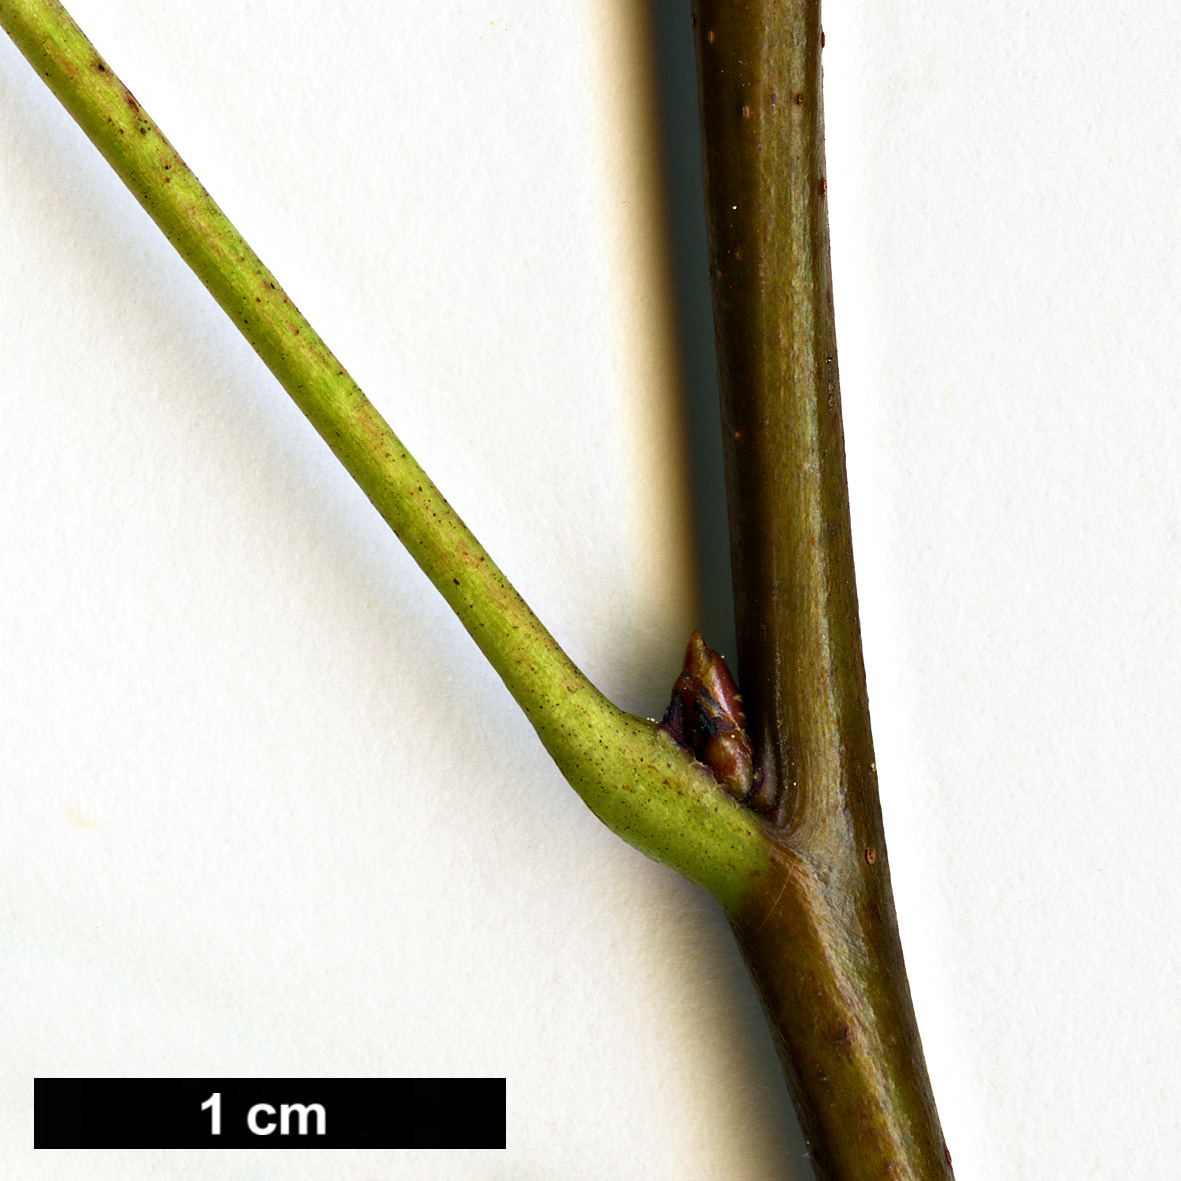 High resolution image: Family: Altingiaceae - Genus: Liquidambar - Taxon: orientalis